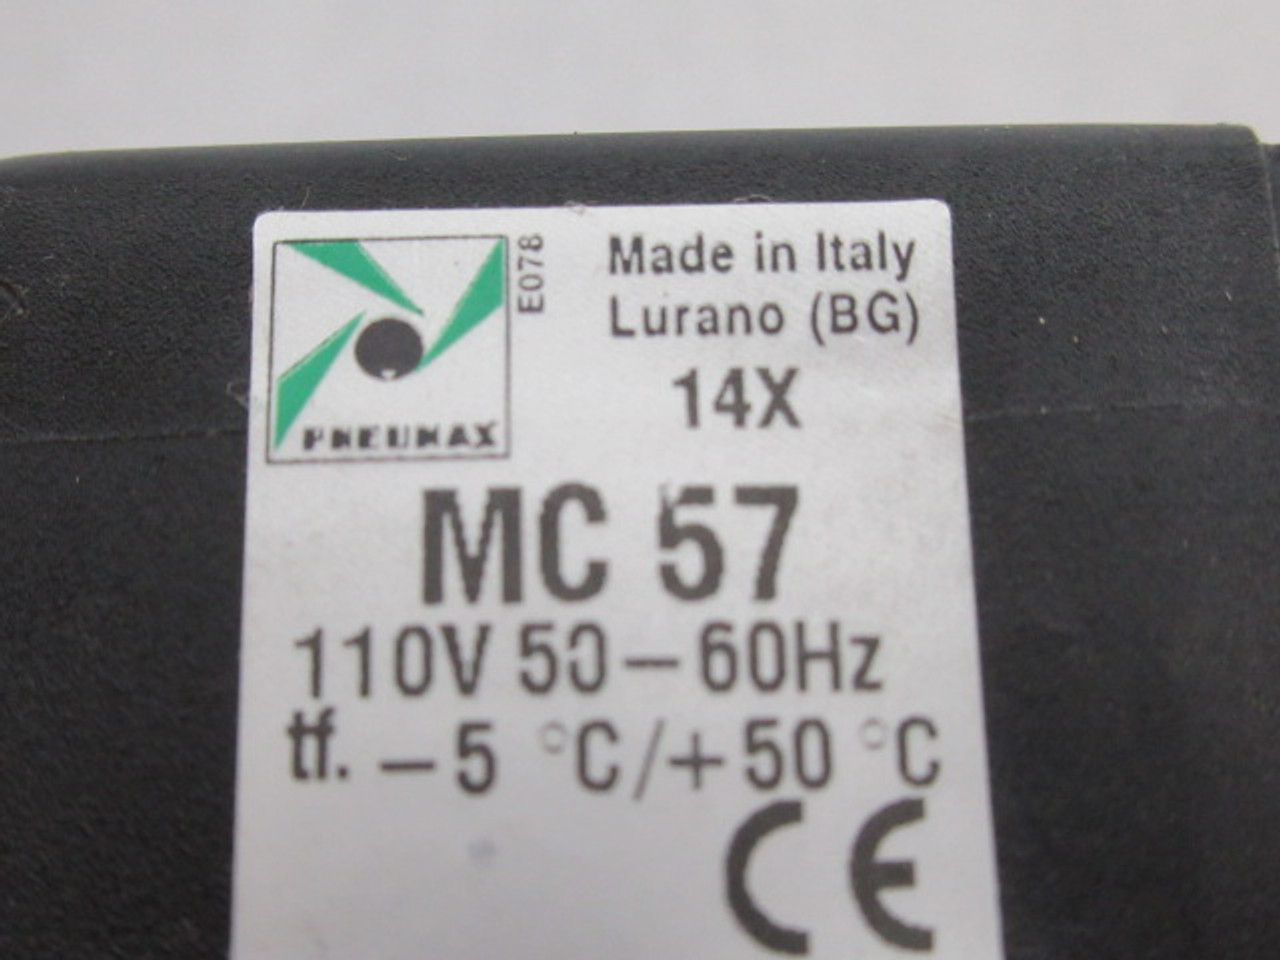 Pneumax MC 57 Solenoid Coil 110V 50-60Hz USED